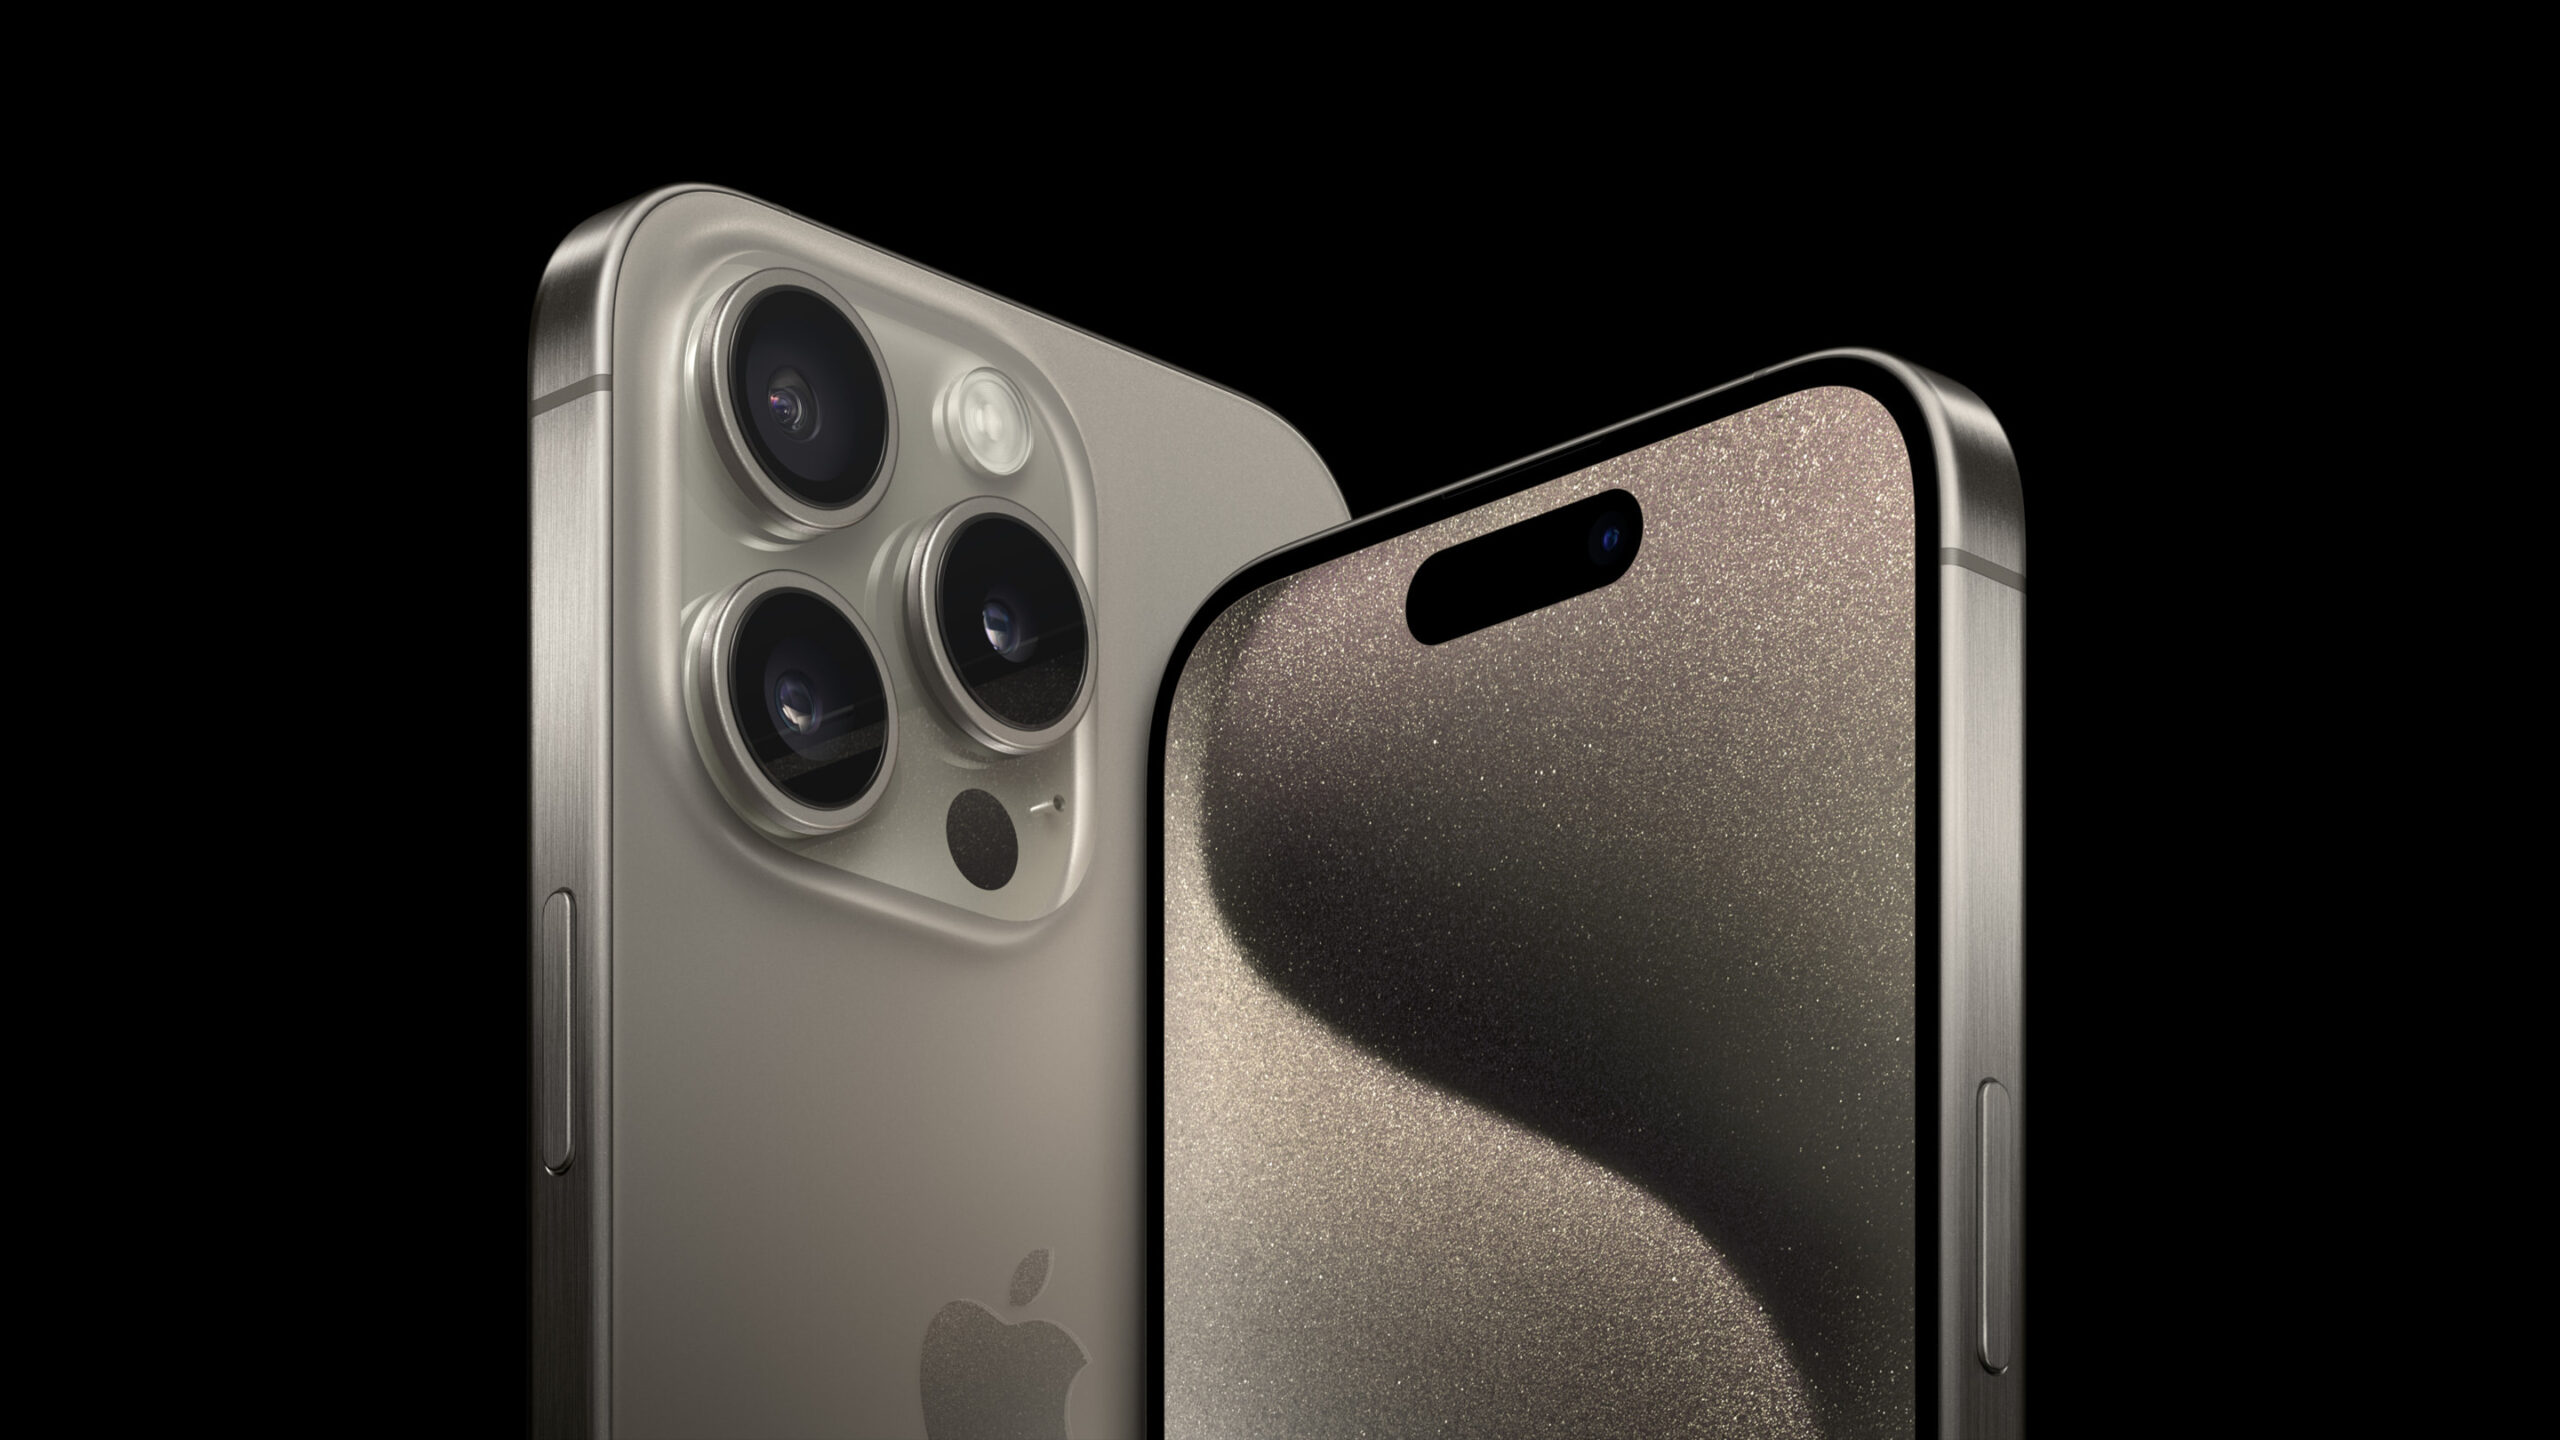 iPhone 15 Pro Max / 15 Pro Lens Protector, Spigen [ GlasTR Optik ] Camera  Cover